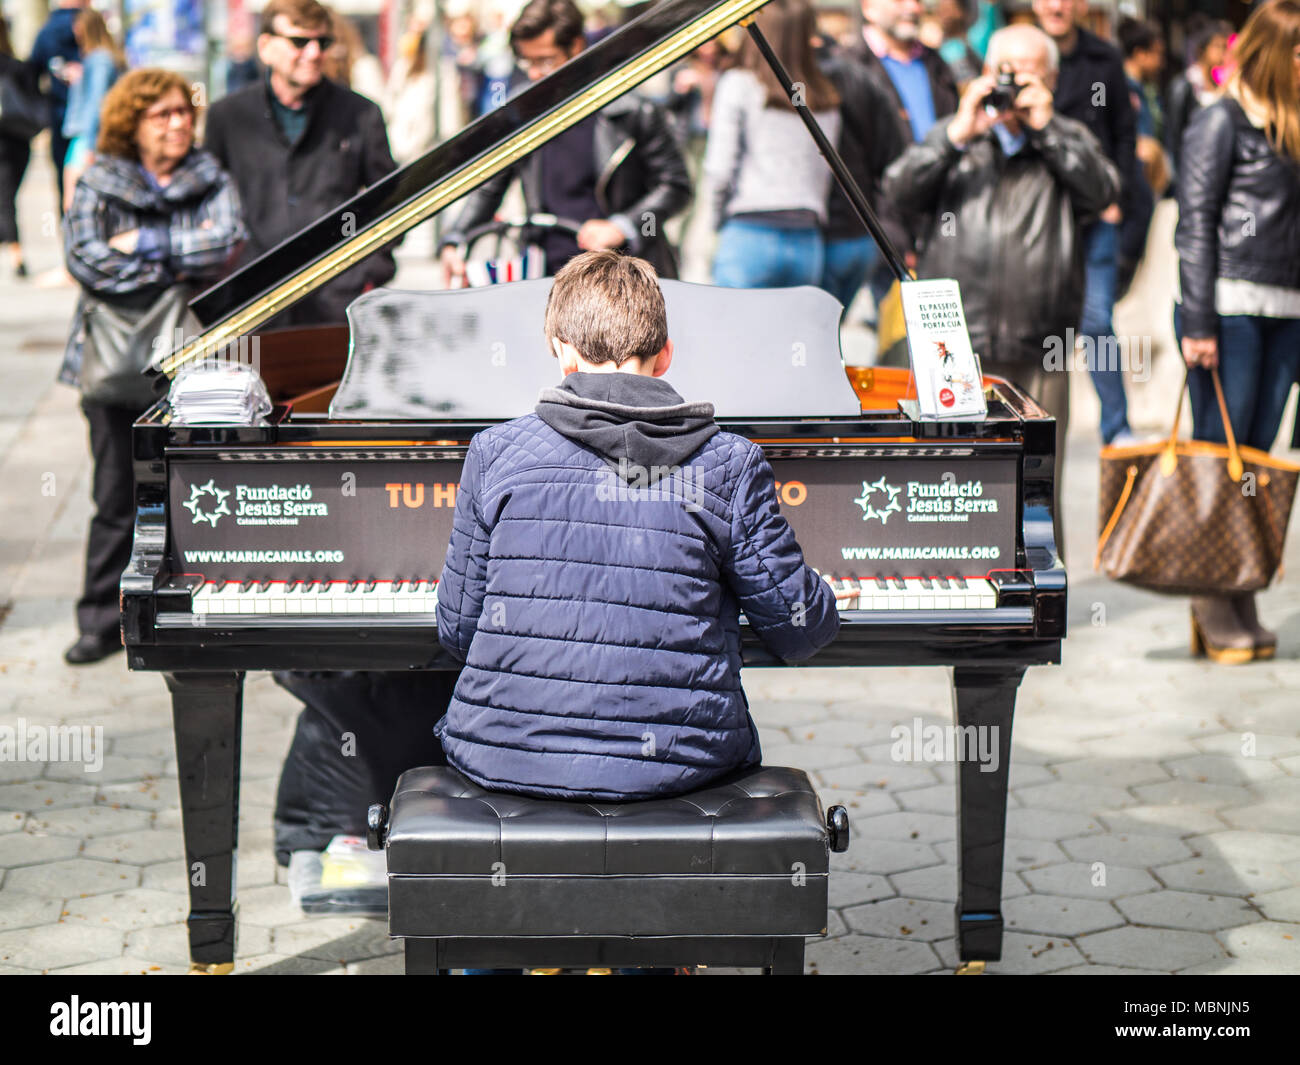 Barcelona, España - 18 de marzo de 2017: Vista de un chico tocando el piano  en un espectáculo de calle Fotografía de stock - Alamy